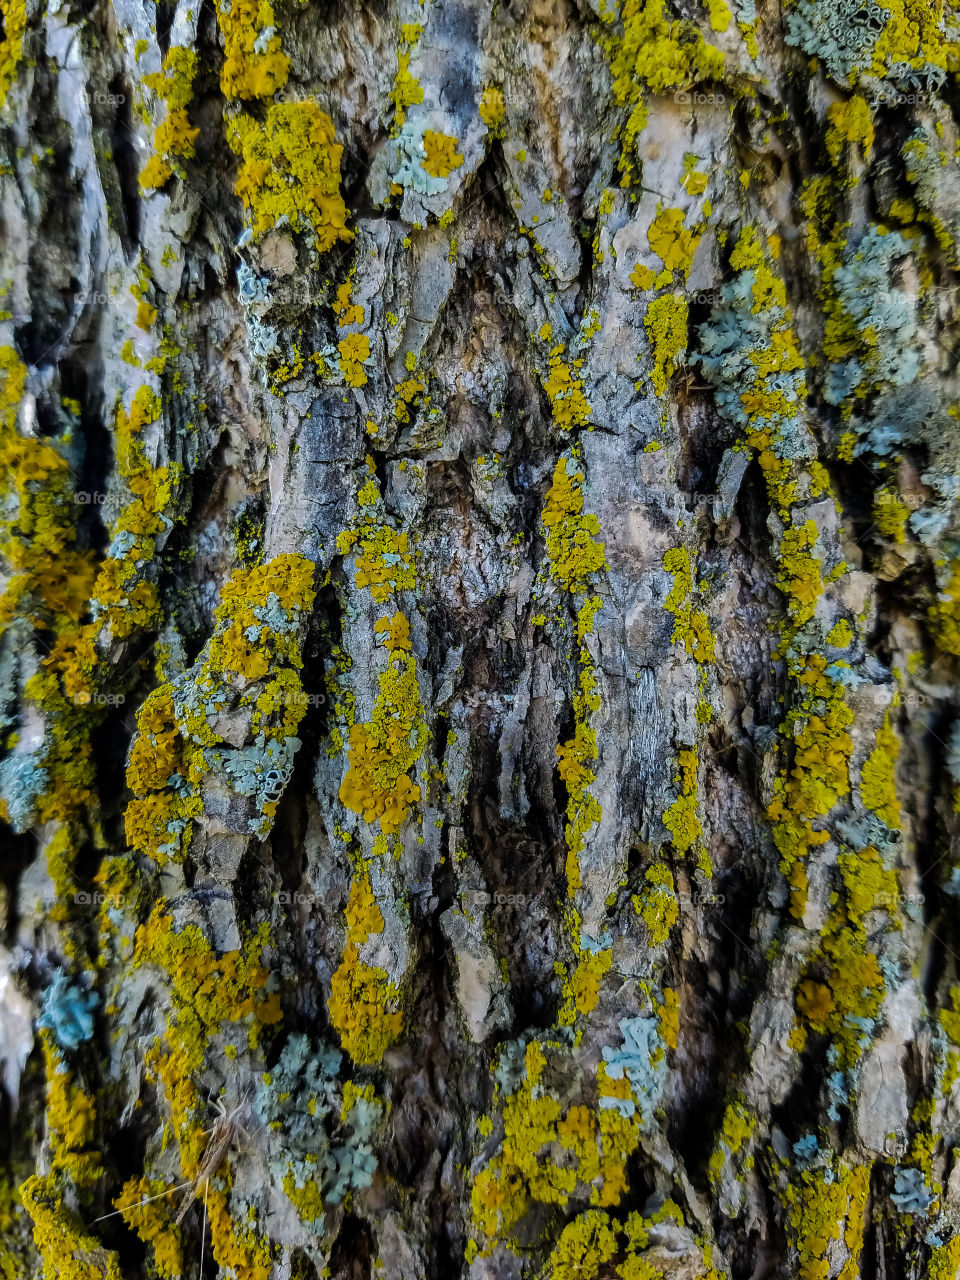 Mossy Tree Bark